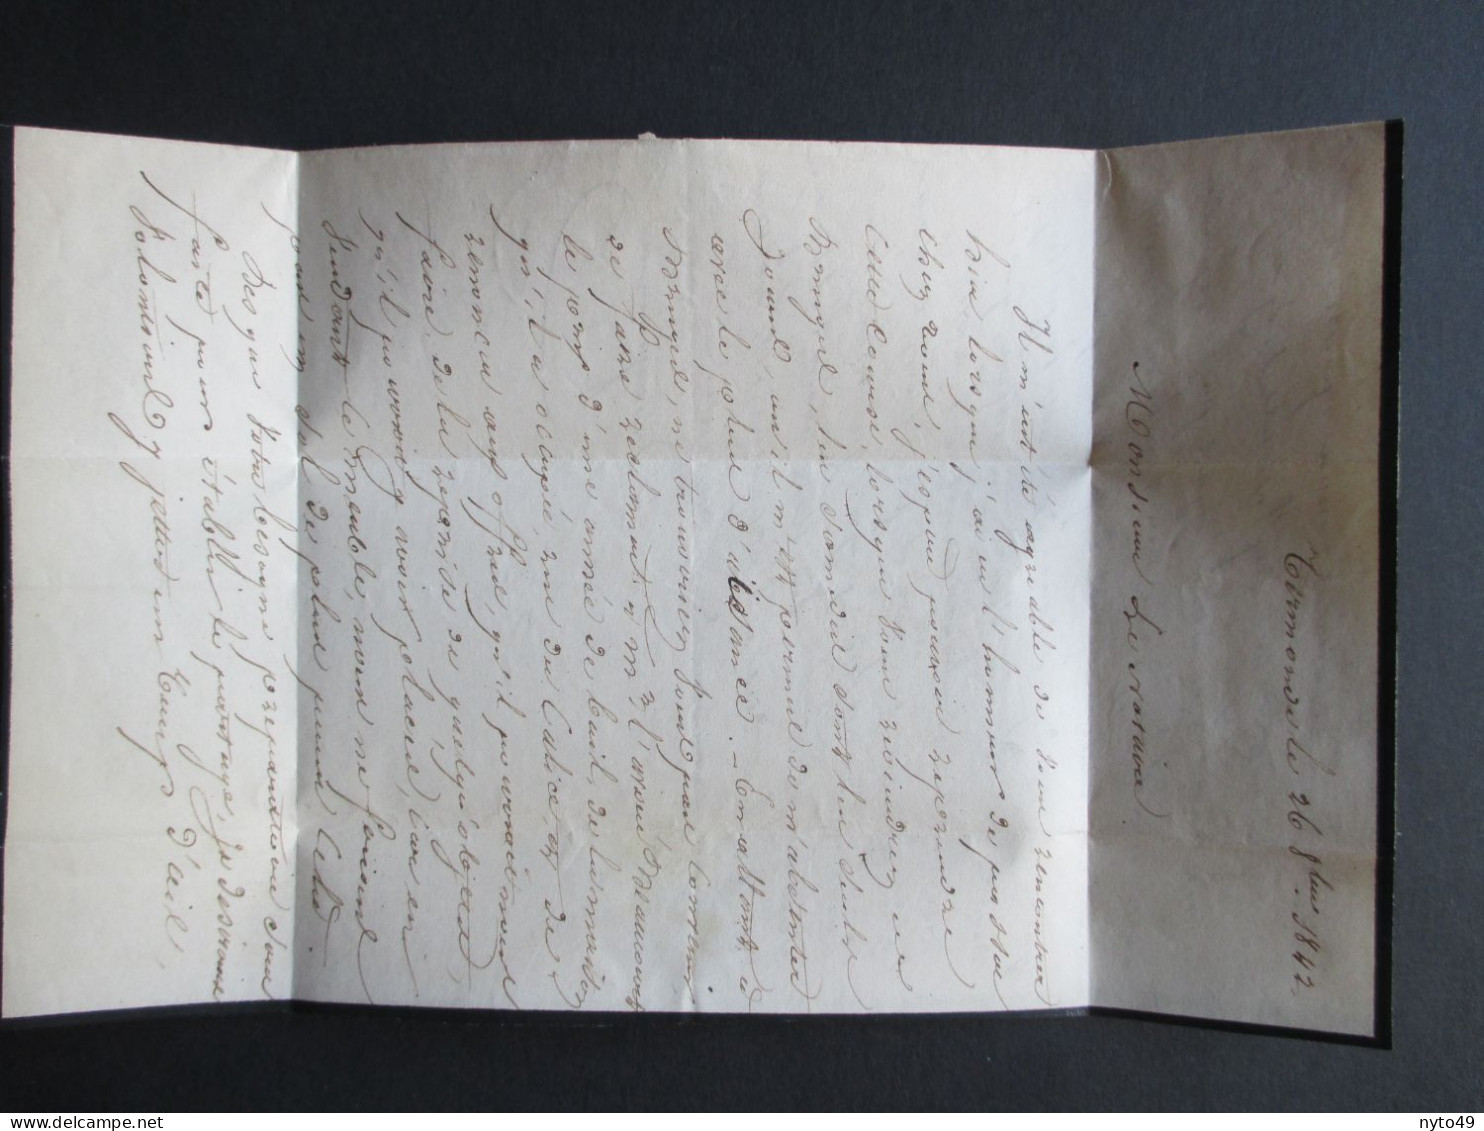 Brief  Verstuurd Uit Dendermonde Naar Gent Op 26/10/1842 - 4 Scans - 1830-1849 (Unabhängiges Belgien)